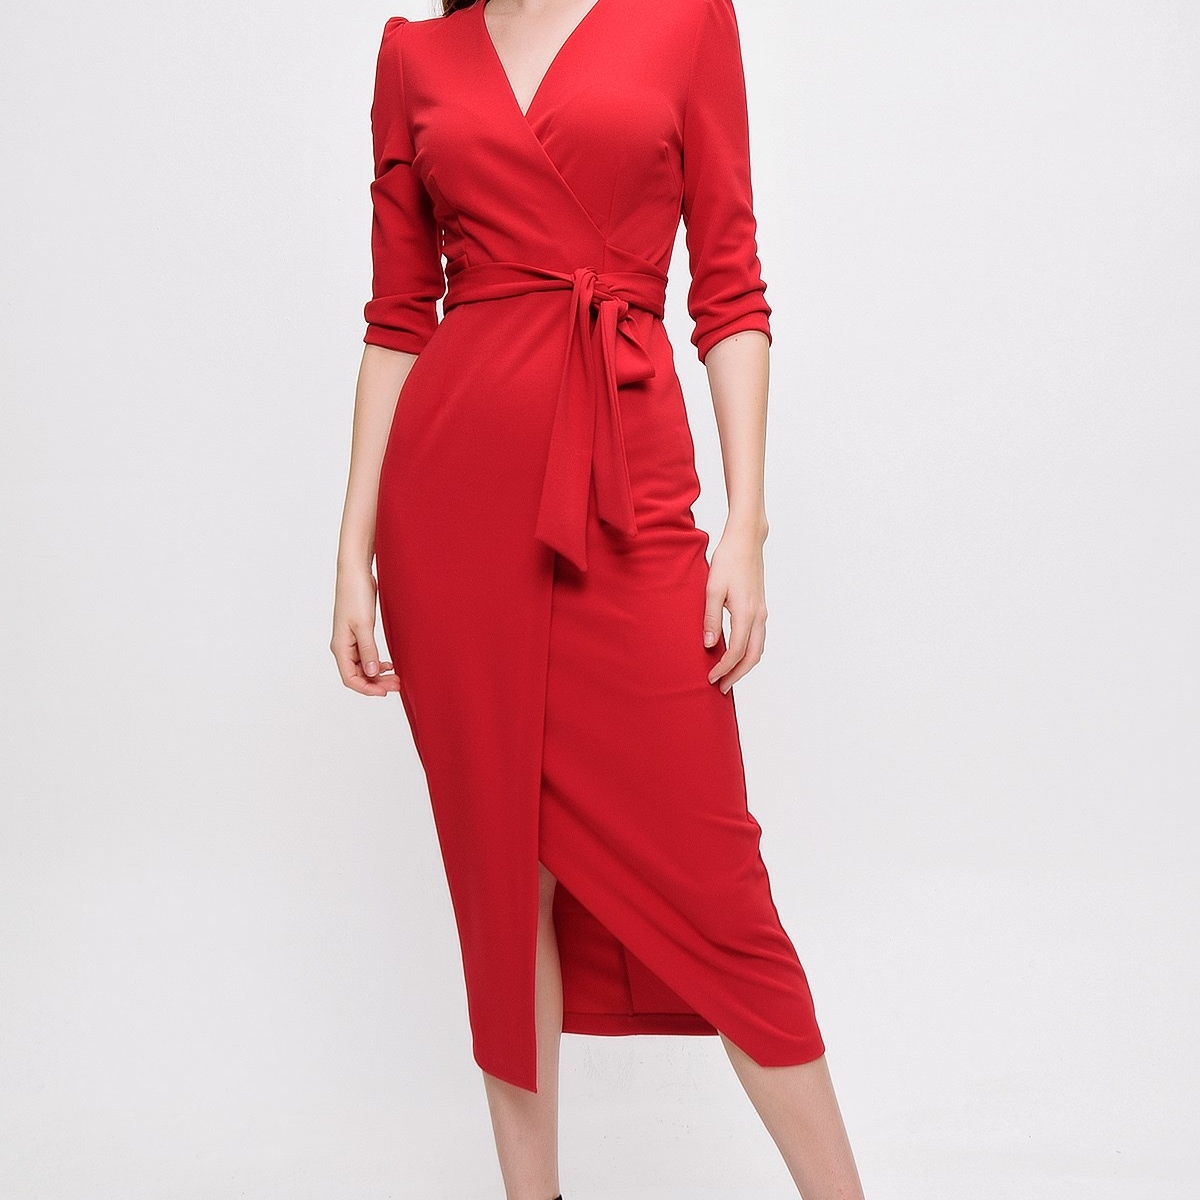 Flo Kadın Kırmızı Kruvaze Yaka Elbise. 2